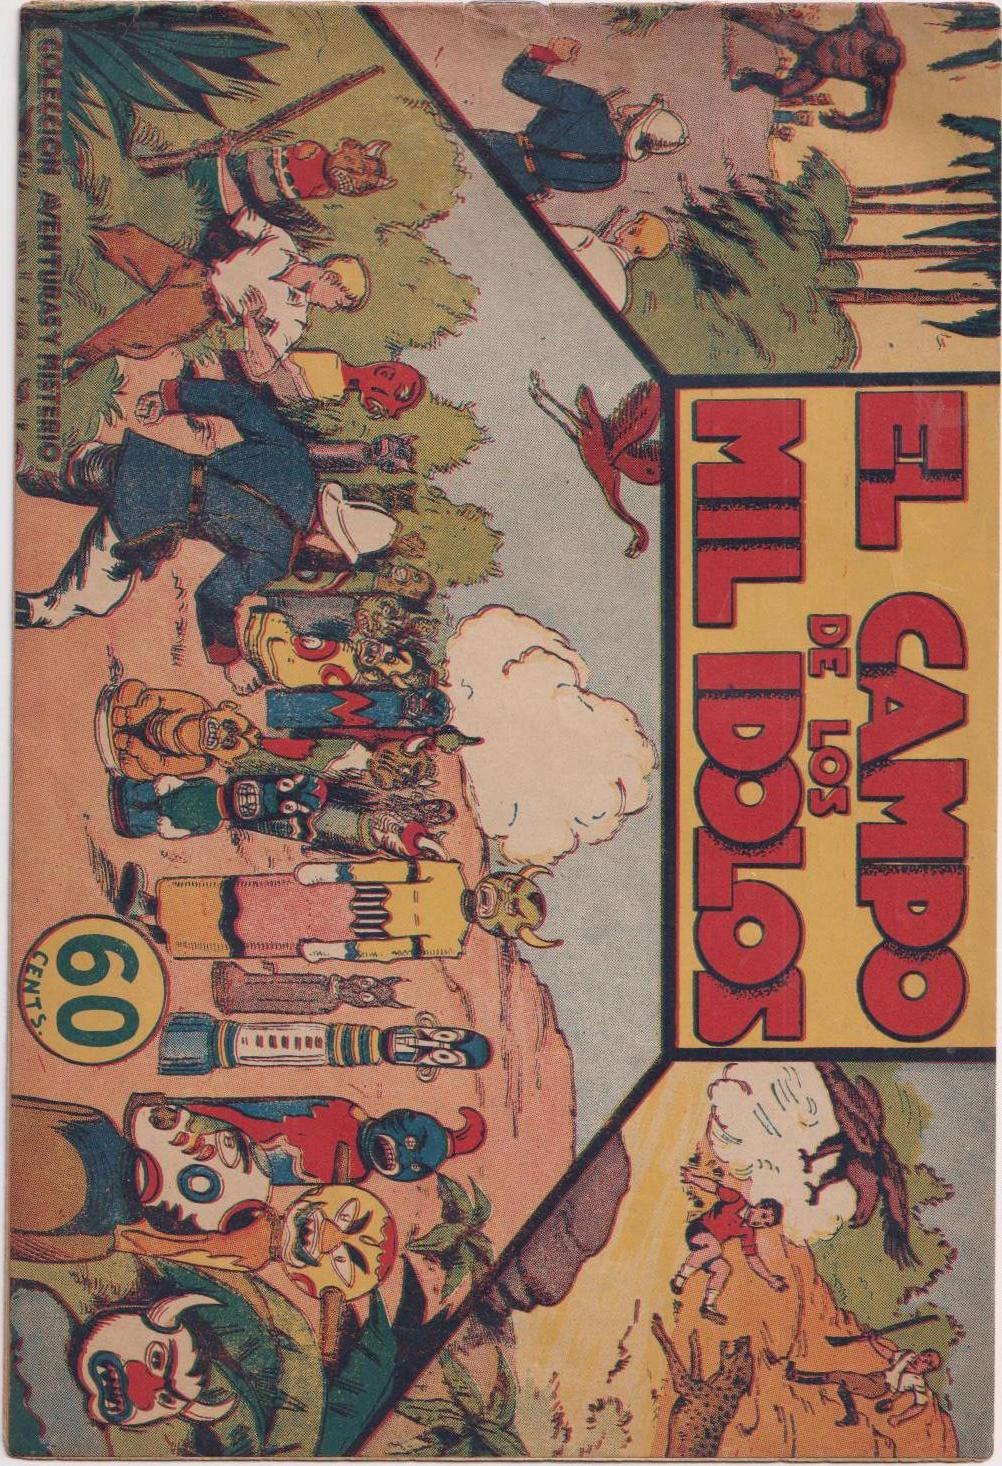 Jorge y Fernando nº 19. El Campo de los Mil Ídolos. Hispano Americana 1940